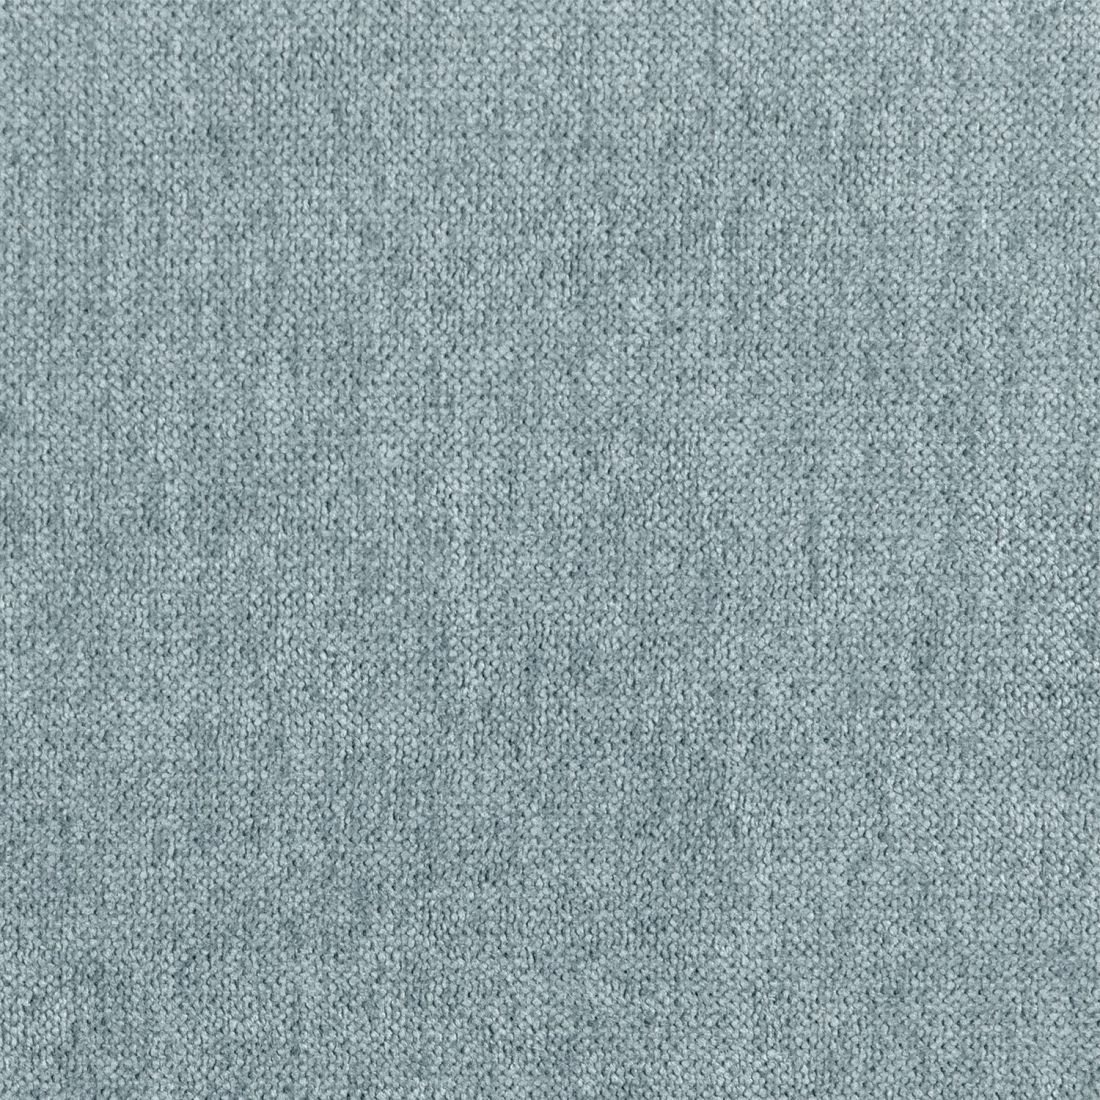 Cabecero tapizado para cama de 135, 150 y 160 color beige Parma - Klas –  Bechester